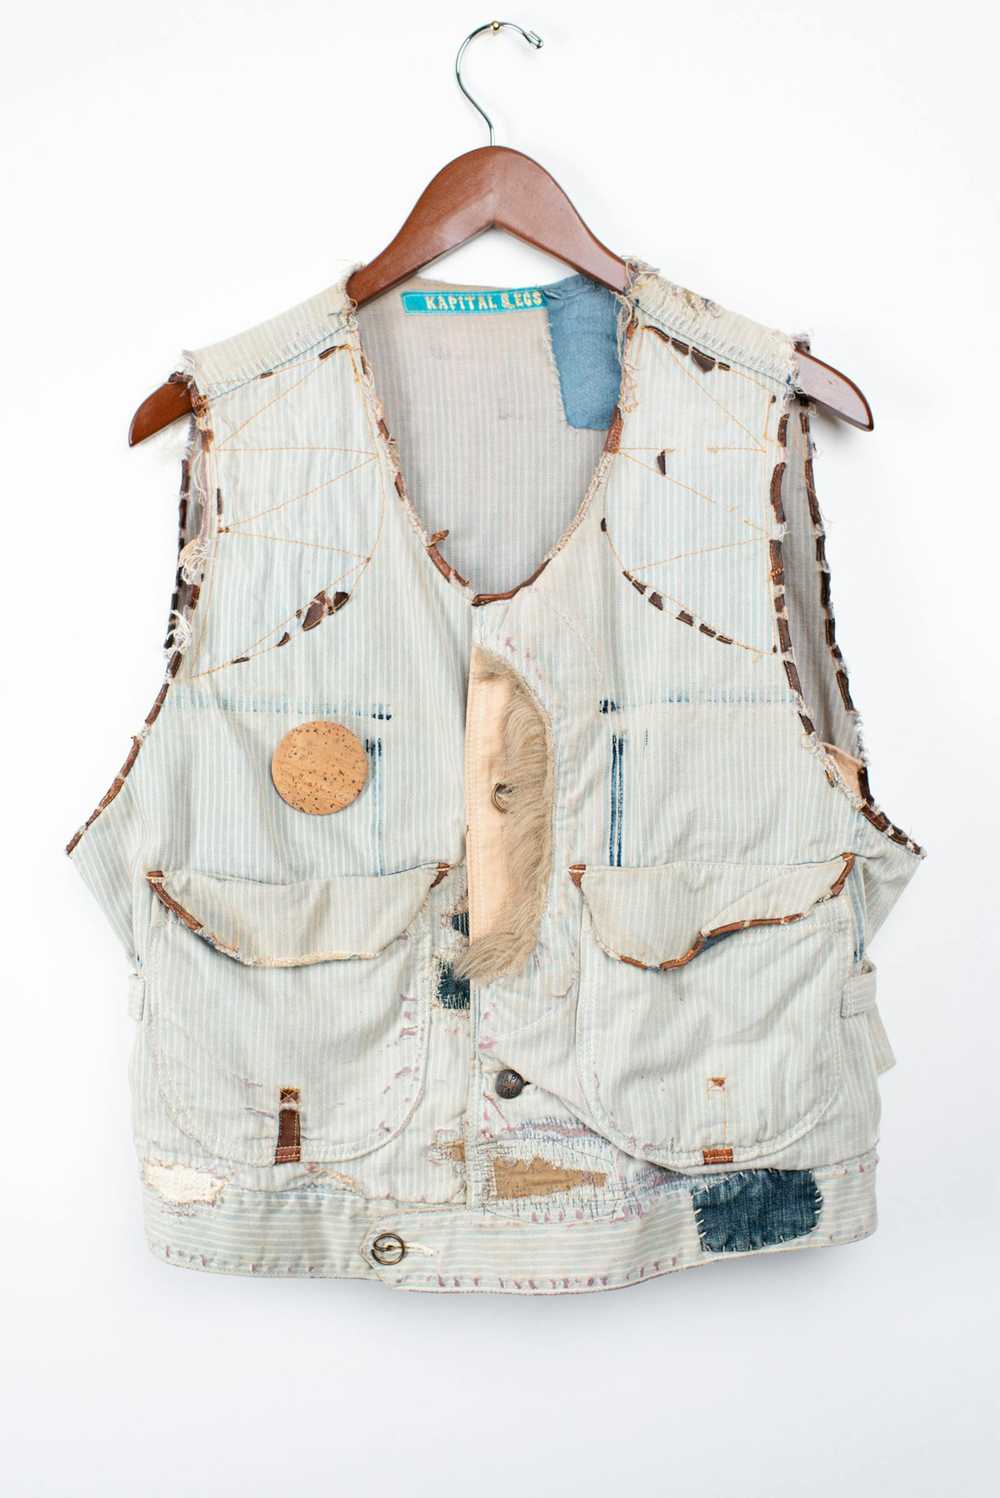 Kapital Folk Patchwork Vest Crazy Details - image 1